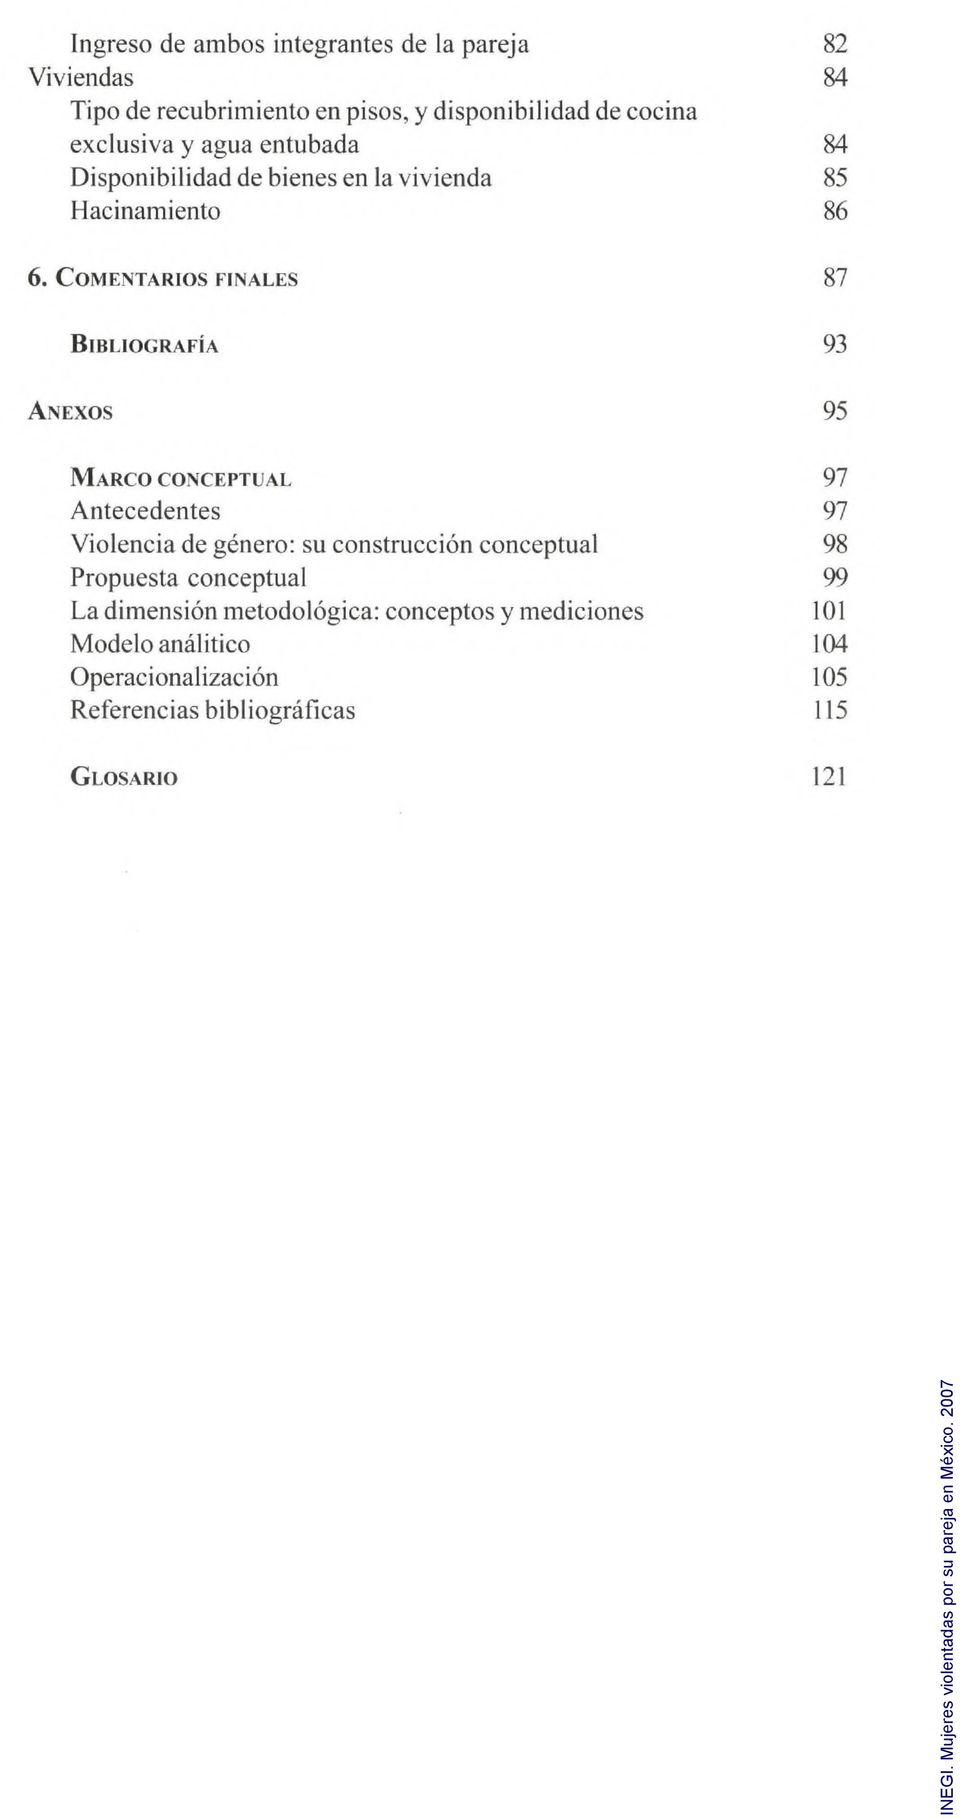 COMENTARIOS FINALES 87 Bibliografia 93 Anexos 95 Marco conceptual 97 Antecedentes 97 Violencia de genero: su construccion